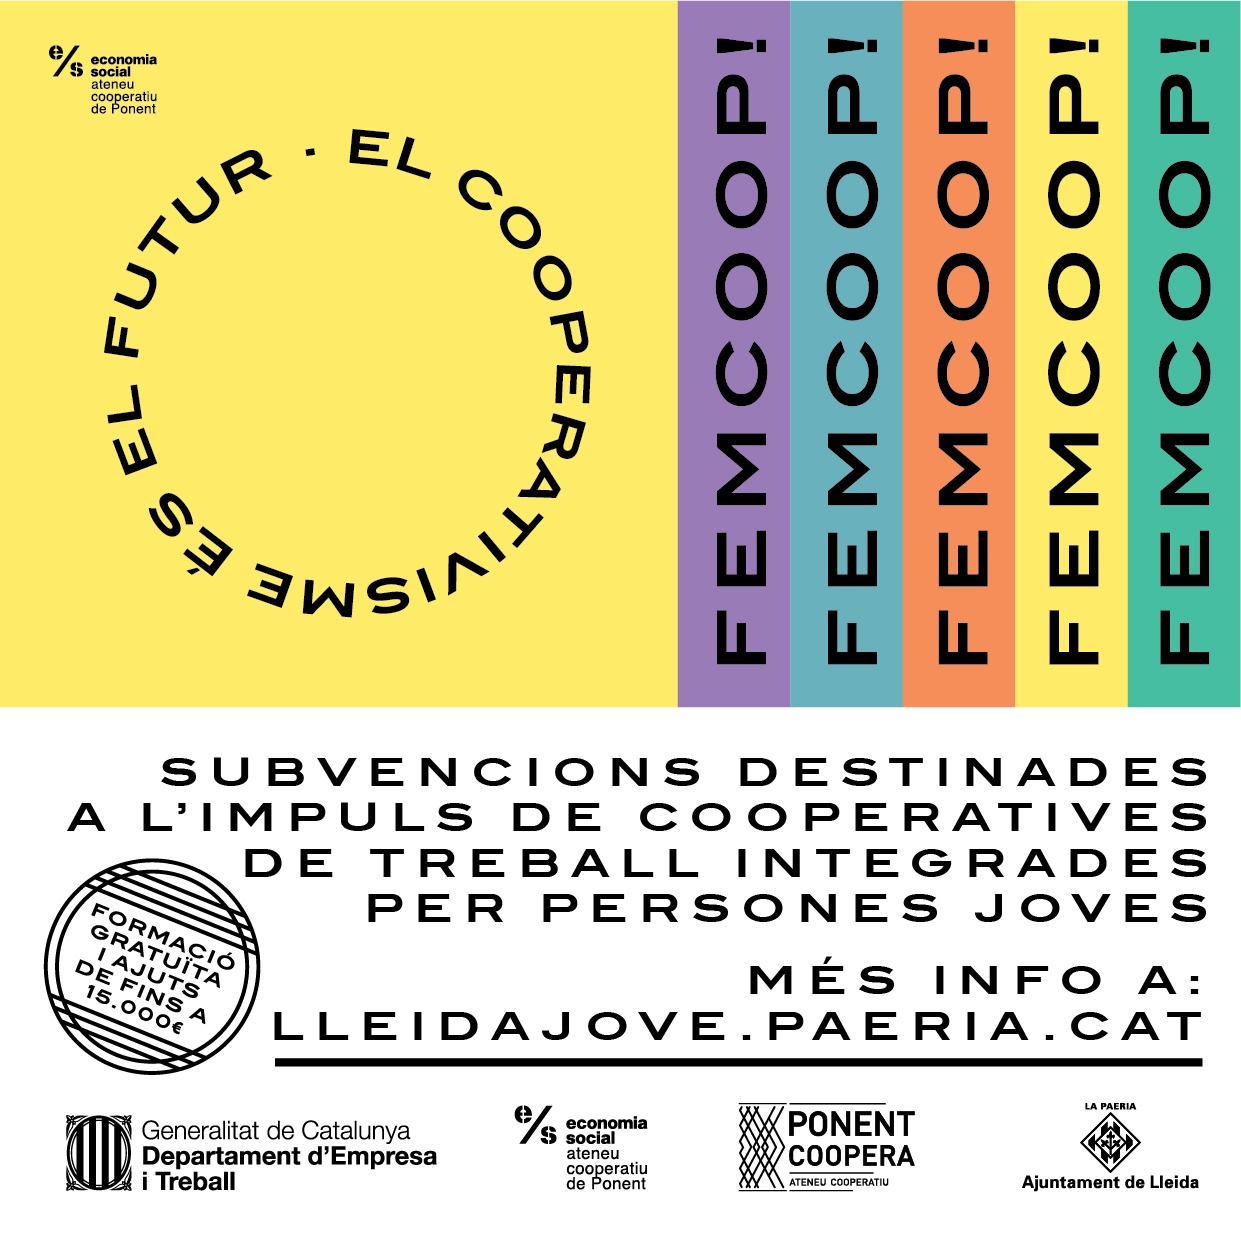 L’Ajuntament de Lleida obre la convocatòria dels ajuts de la 2a edició del projecte Fem Coop!, una iniciativa impulsada per Lleida Jove i Ponent Coopera